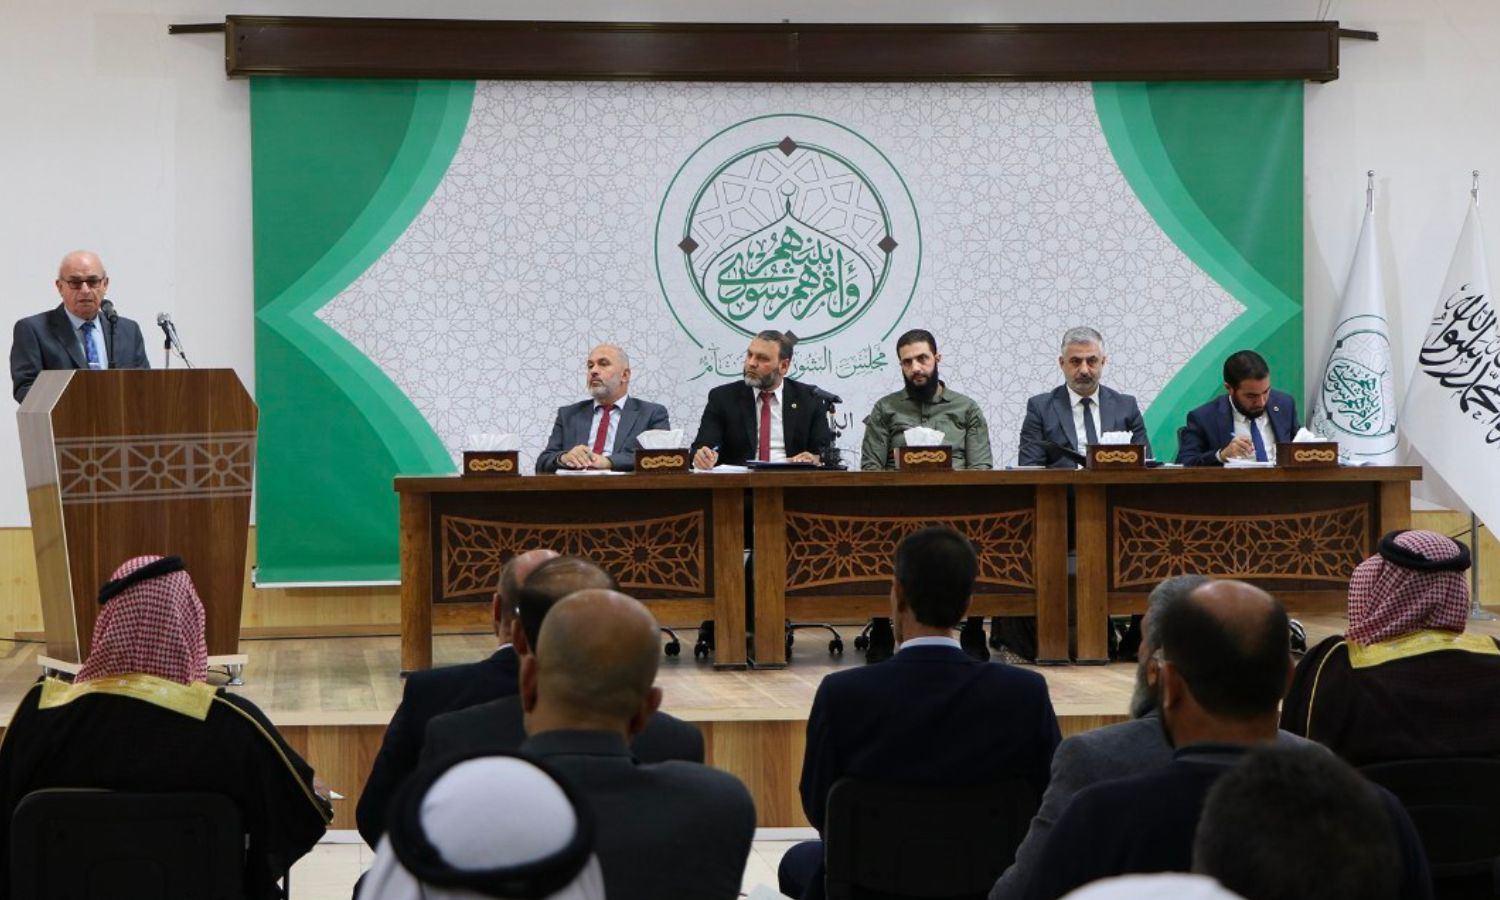 جلسة لـ"مجلس الشورى" في إدلب خصصت لنقاش قطاع التعليم - 29 من تشرين الأول 2022 (حكومة الإنقاذ)